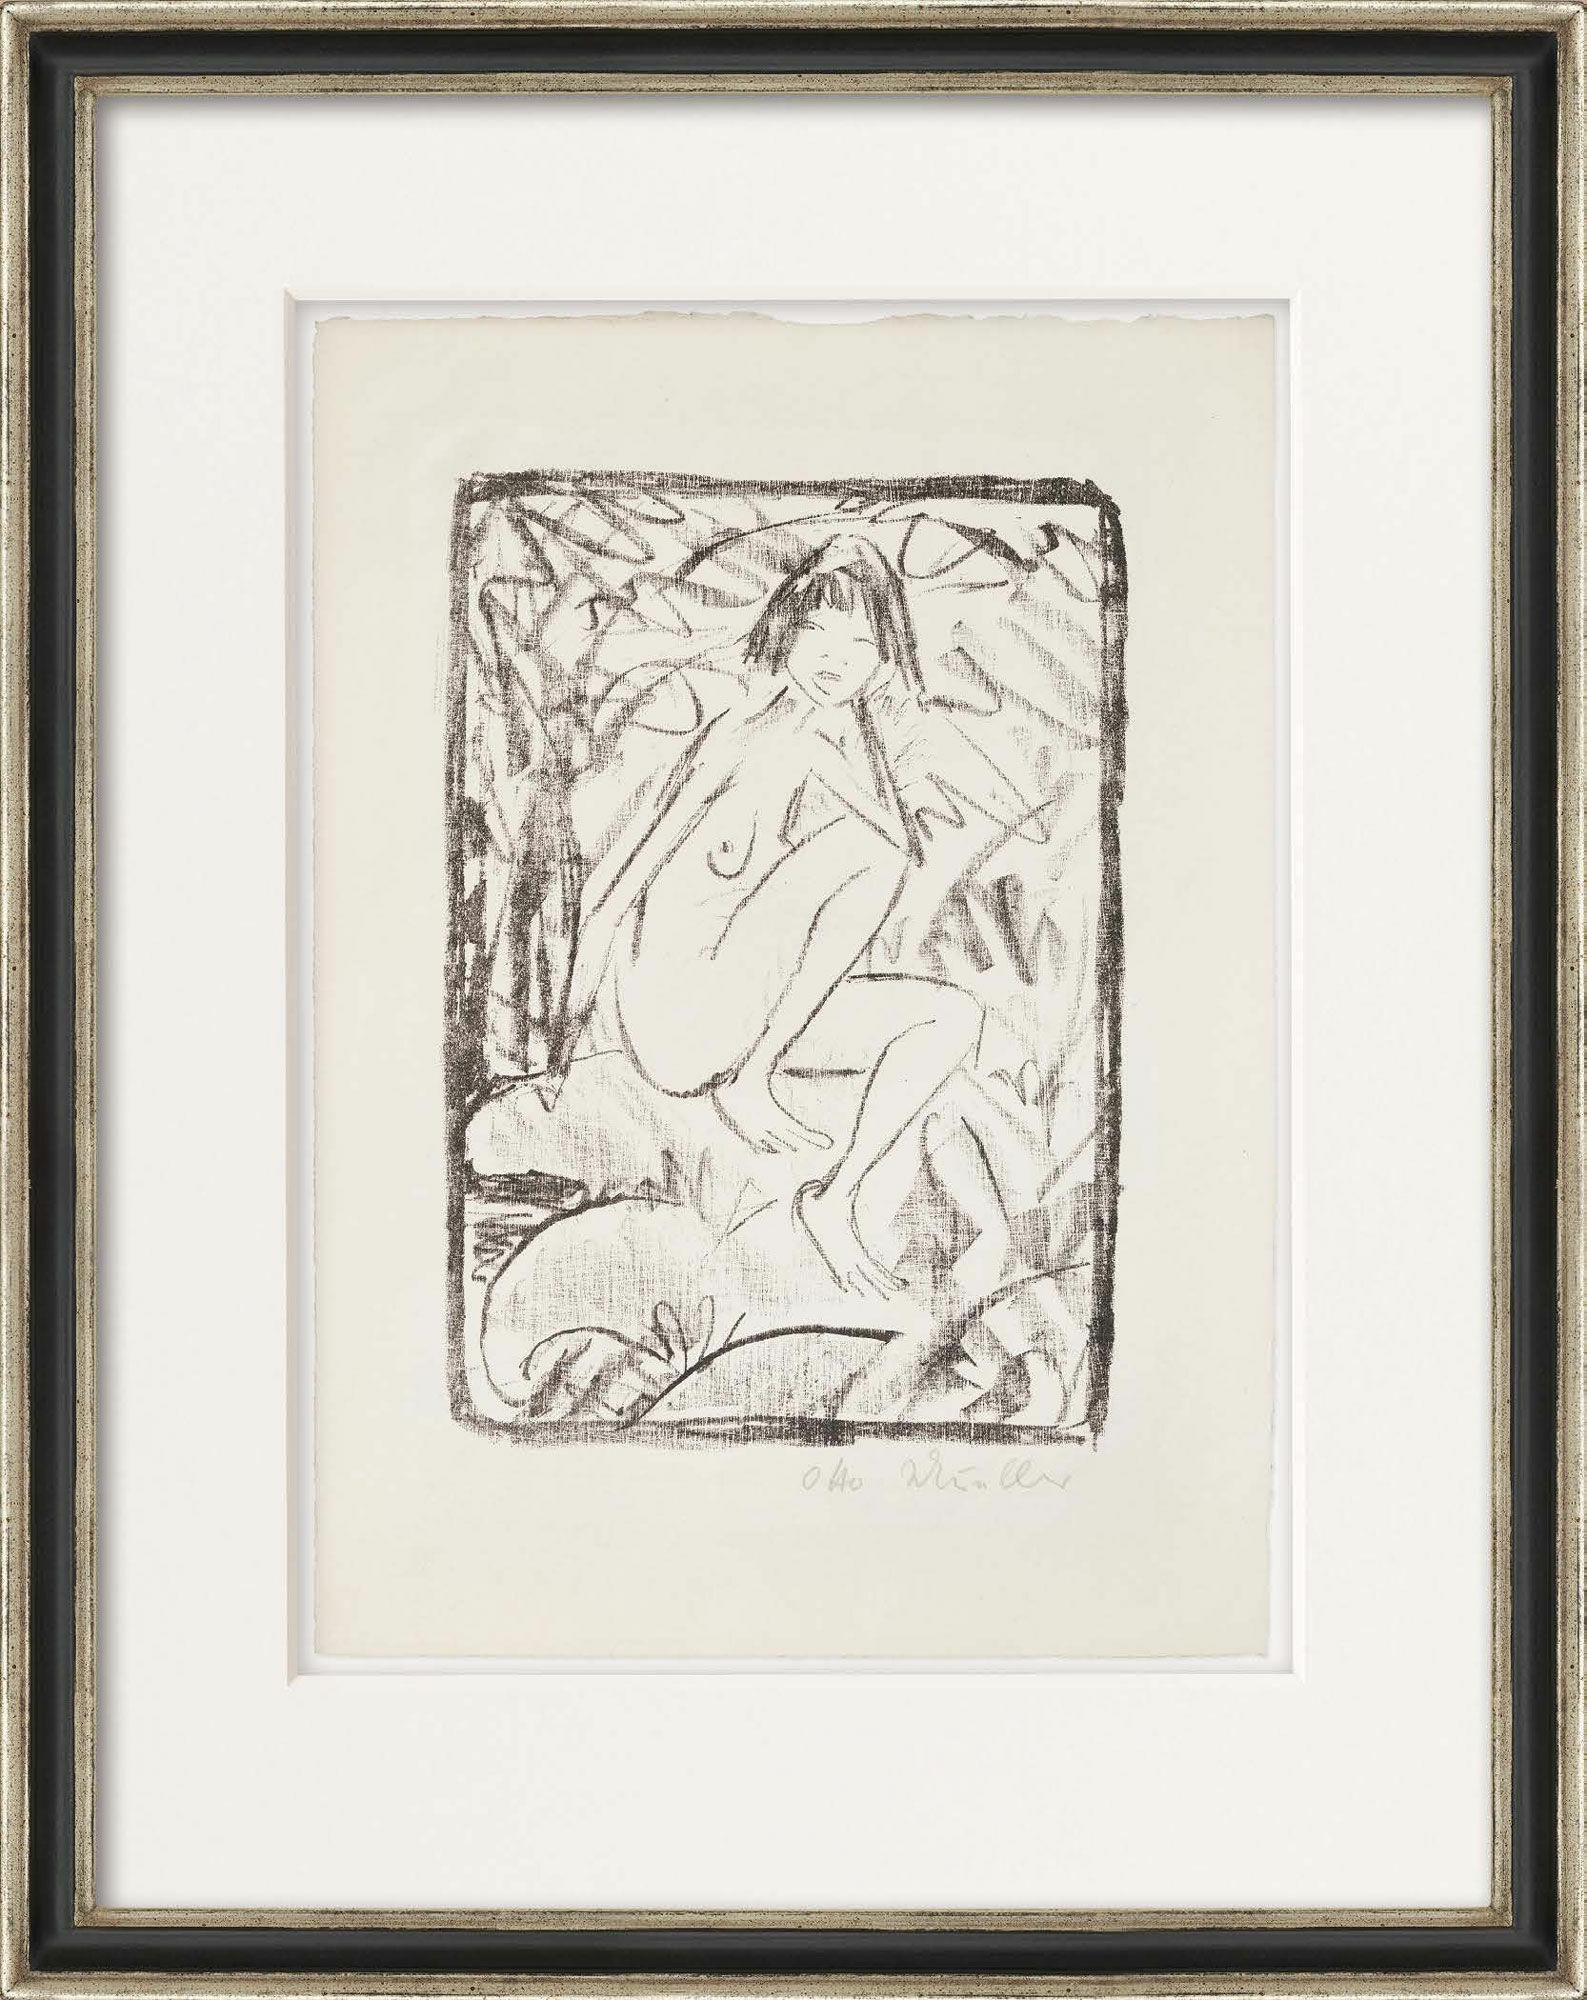 Bild "Sitzende, von Blattwerk umgeben" (1923) von Otto Mueller